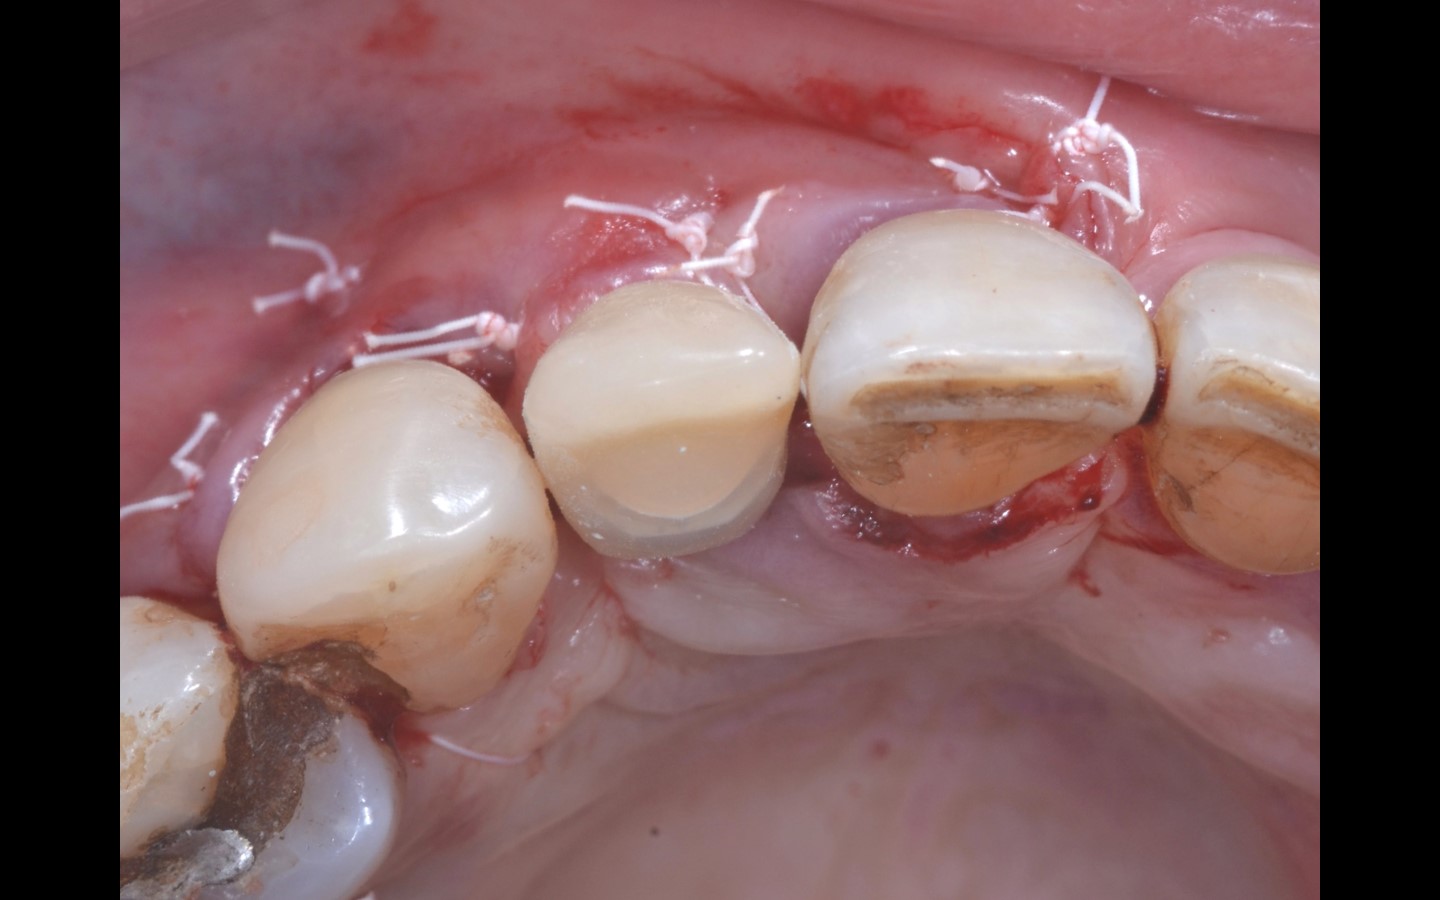 image15 - Reabilitação dento-alveolar com implante Arcsys, enxerto conjuntivo e substituto ósseo Nanosynt